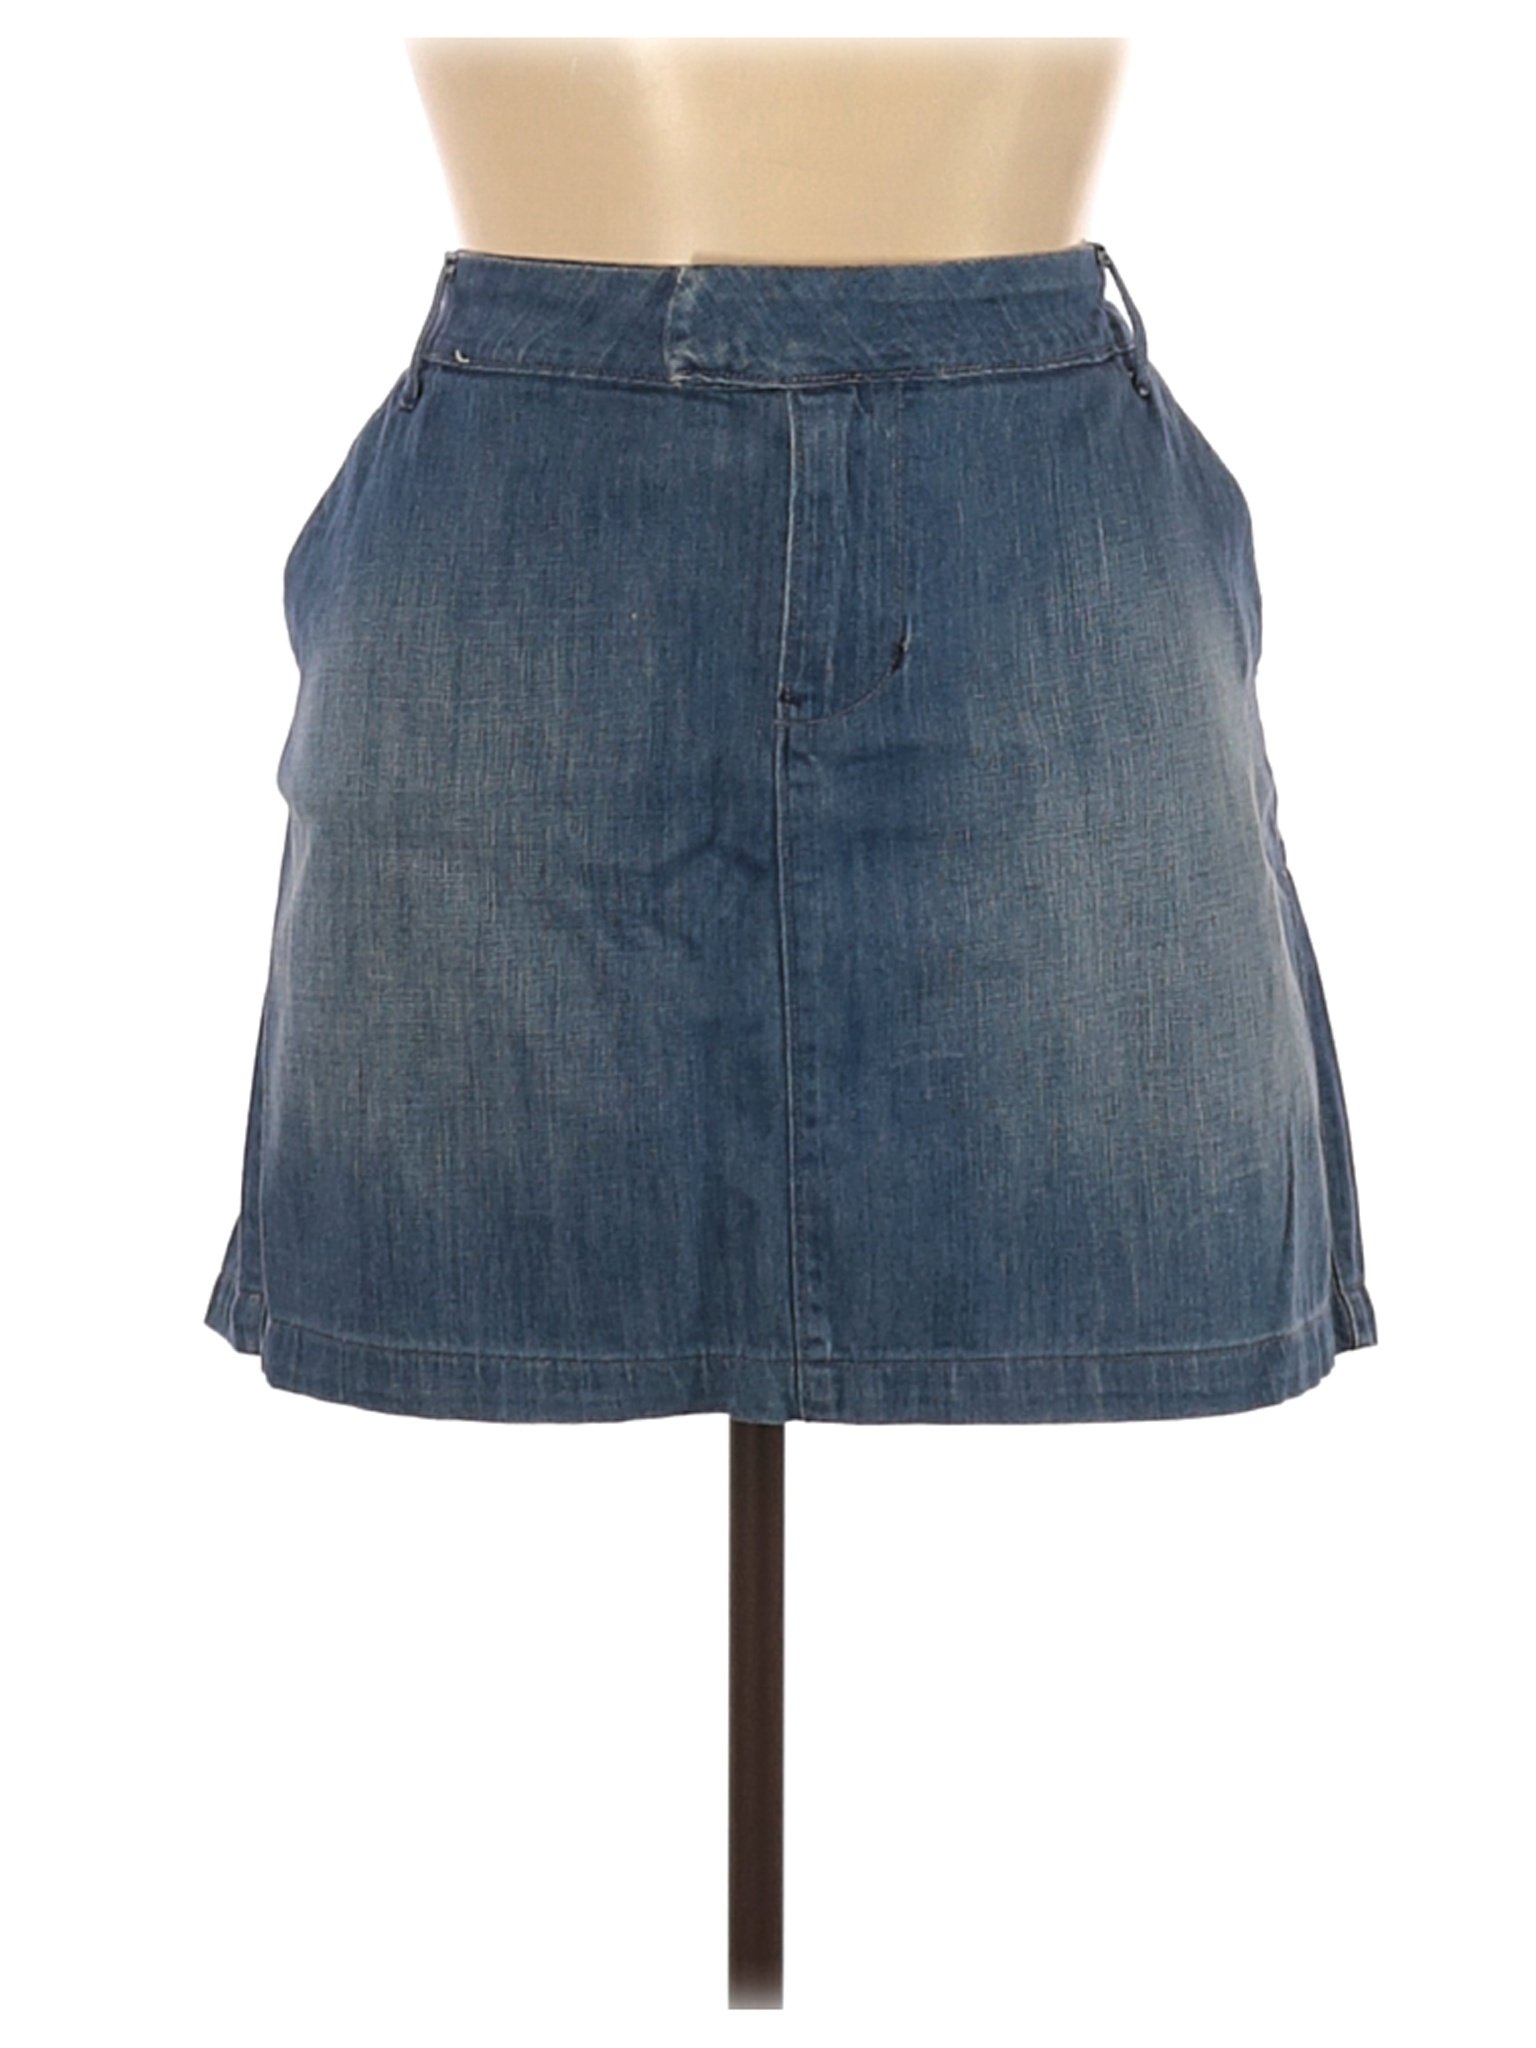 Old Navy Women Blue Denim Skirt 18 Plus | eBay